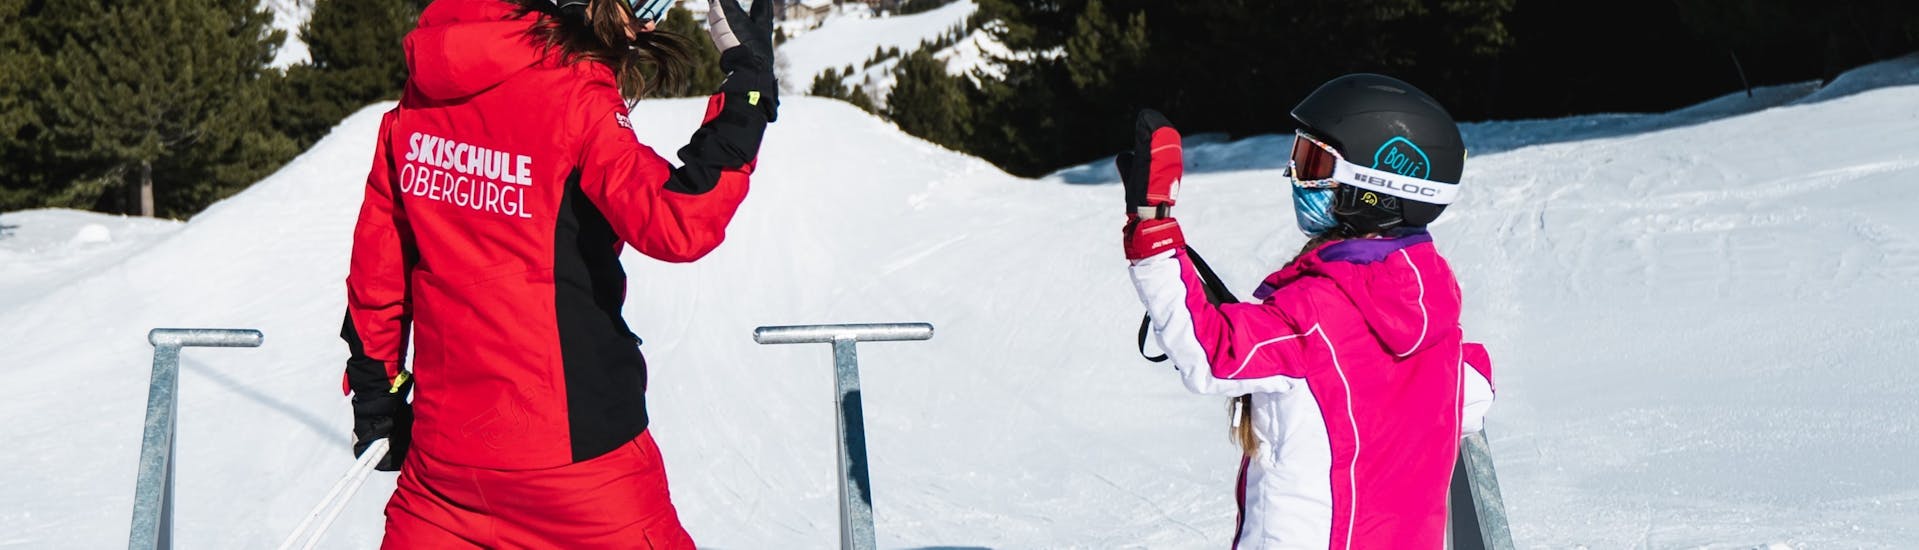 Lezioni private di sci per bambini per tutti i livelli.